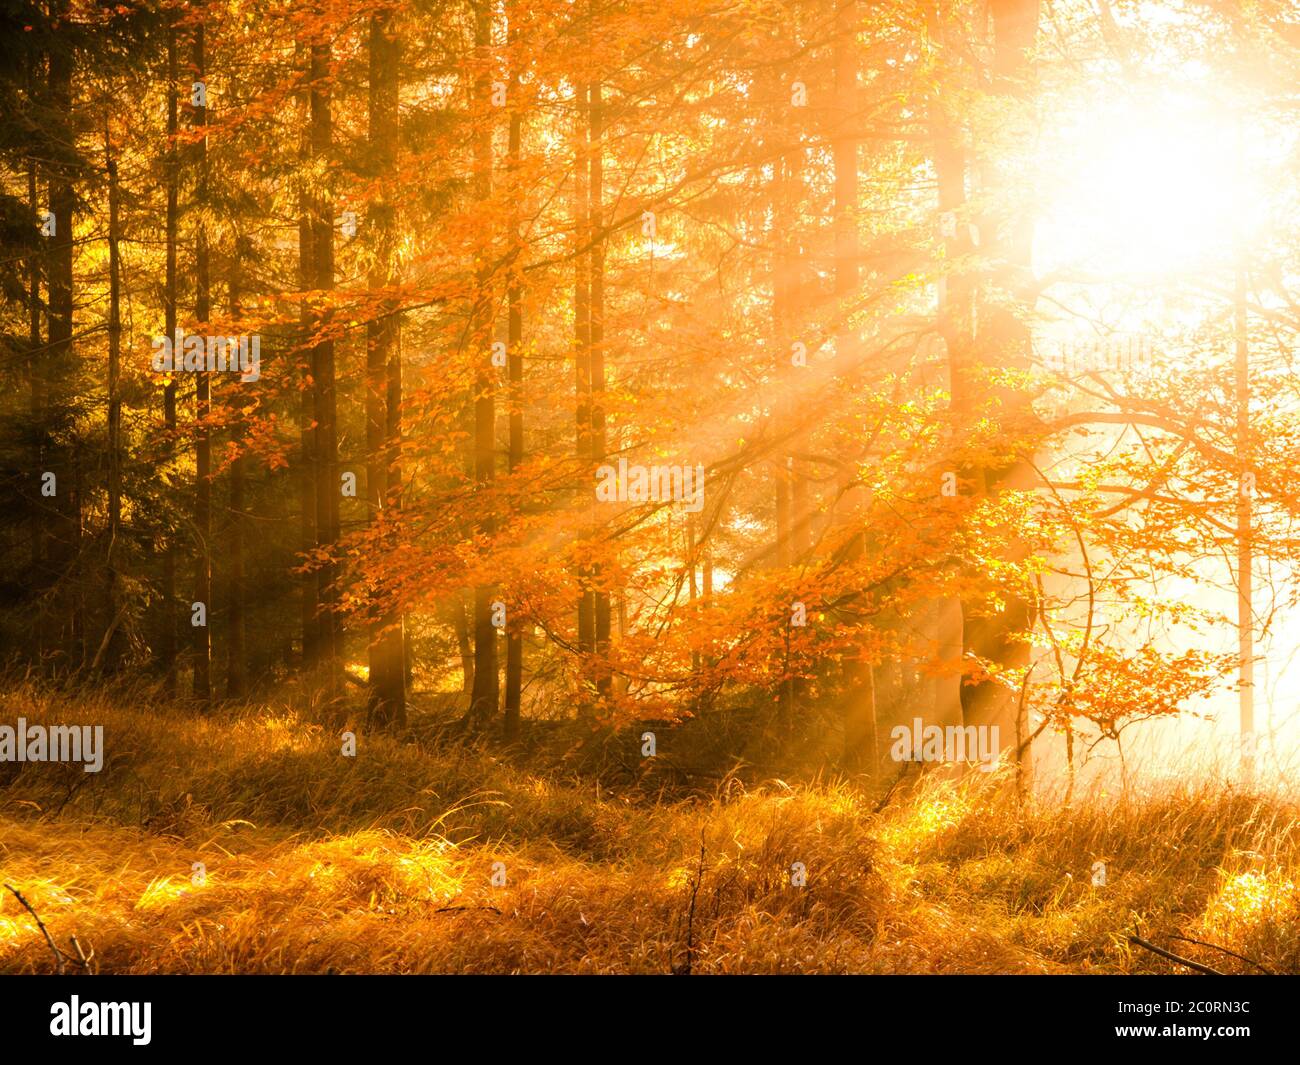 Autunno in faggeta. Splendido paesaggio caldo con i raggi del sole della prima mattina nella foresta autunnale. Foto Stock